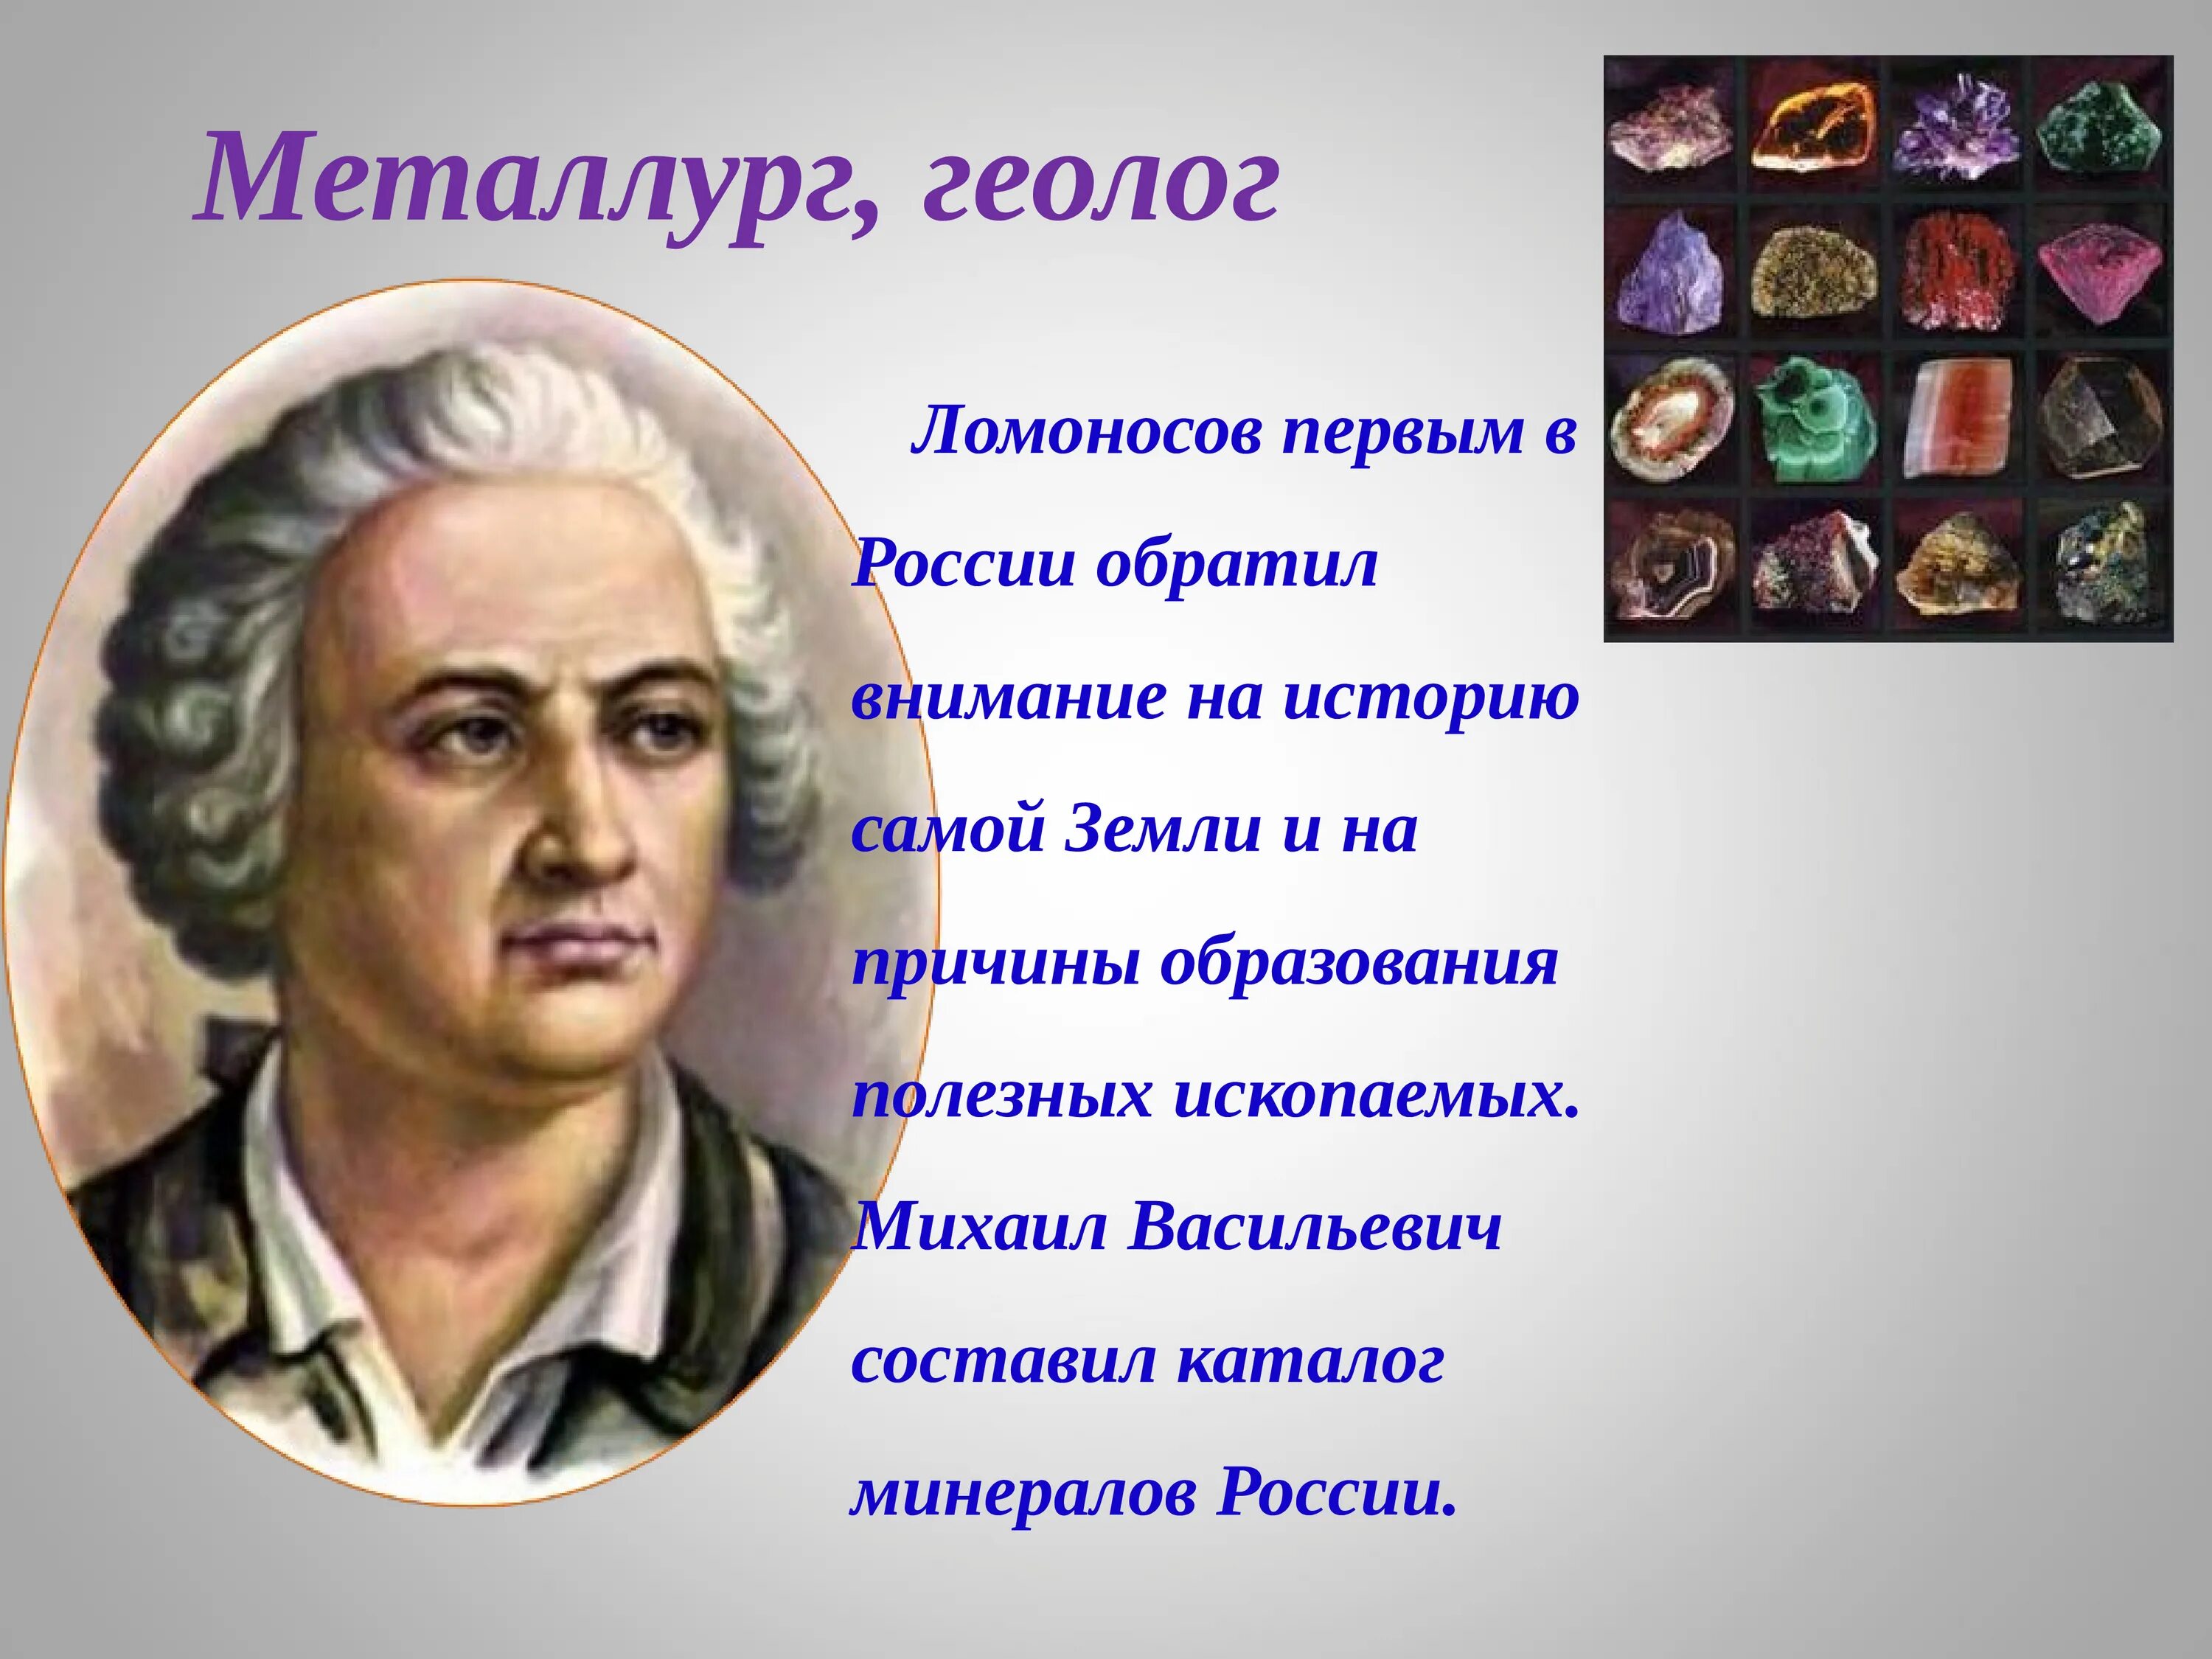 М.В.Ломоносов 18 век. Первое слово знаменитого